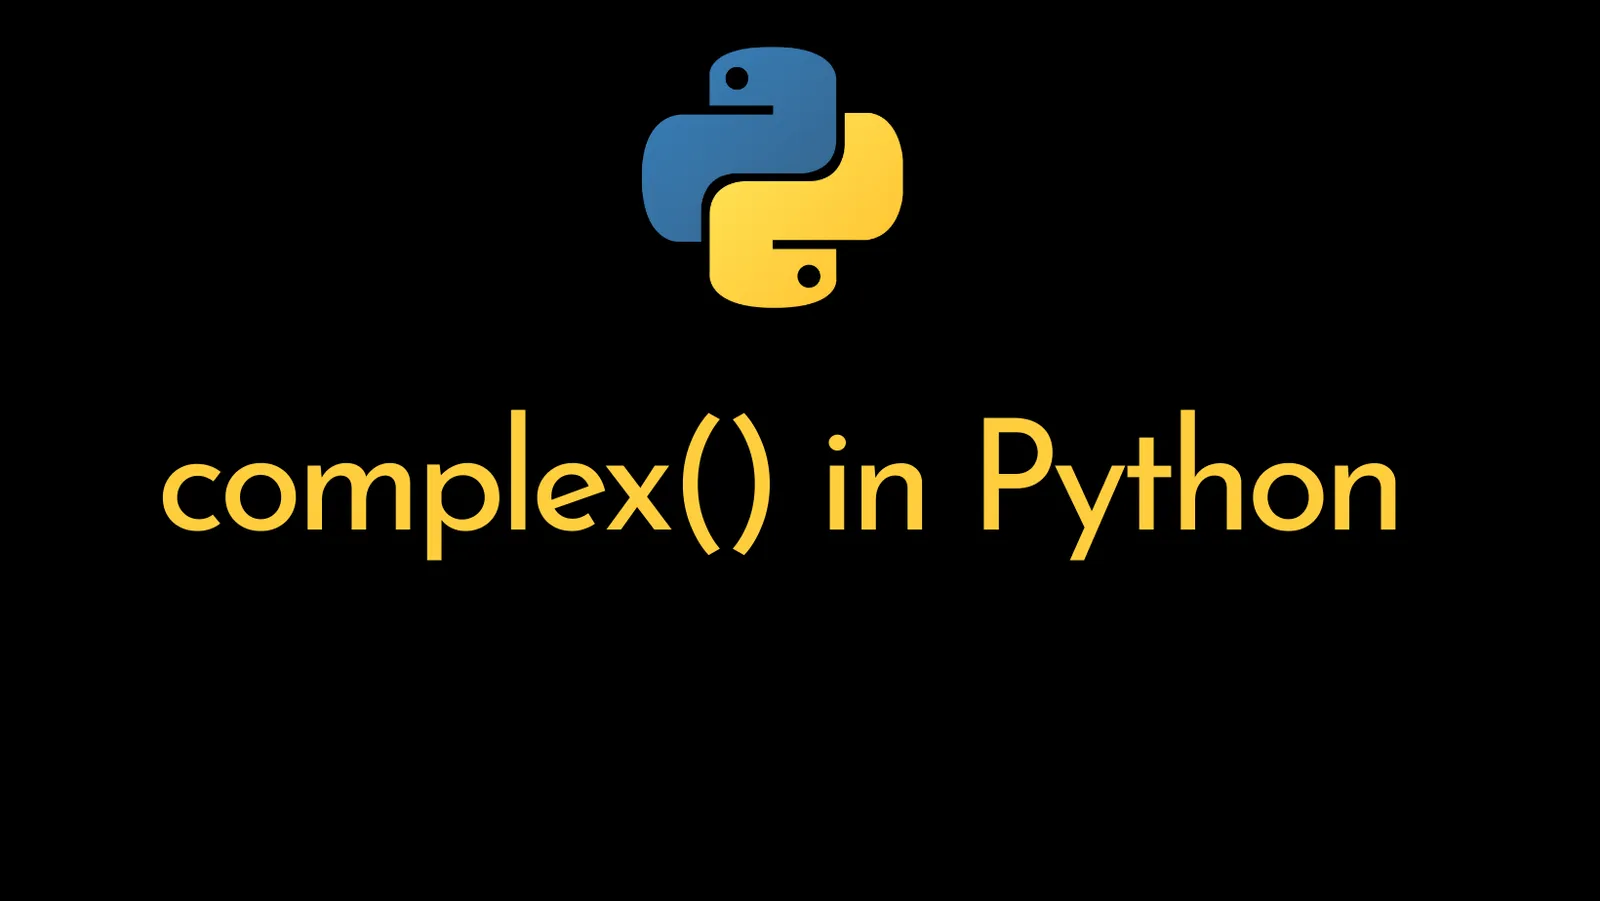 Python complex() - ItsMyCode